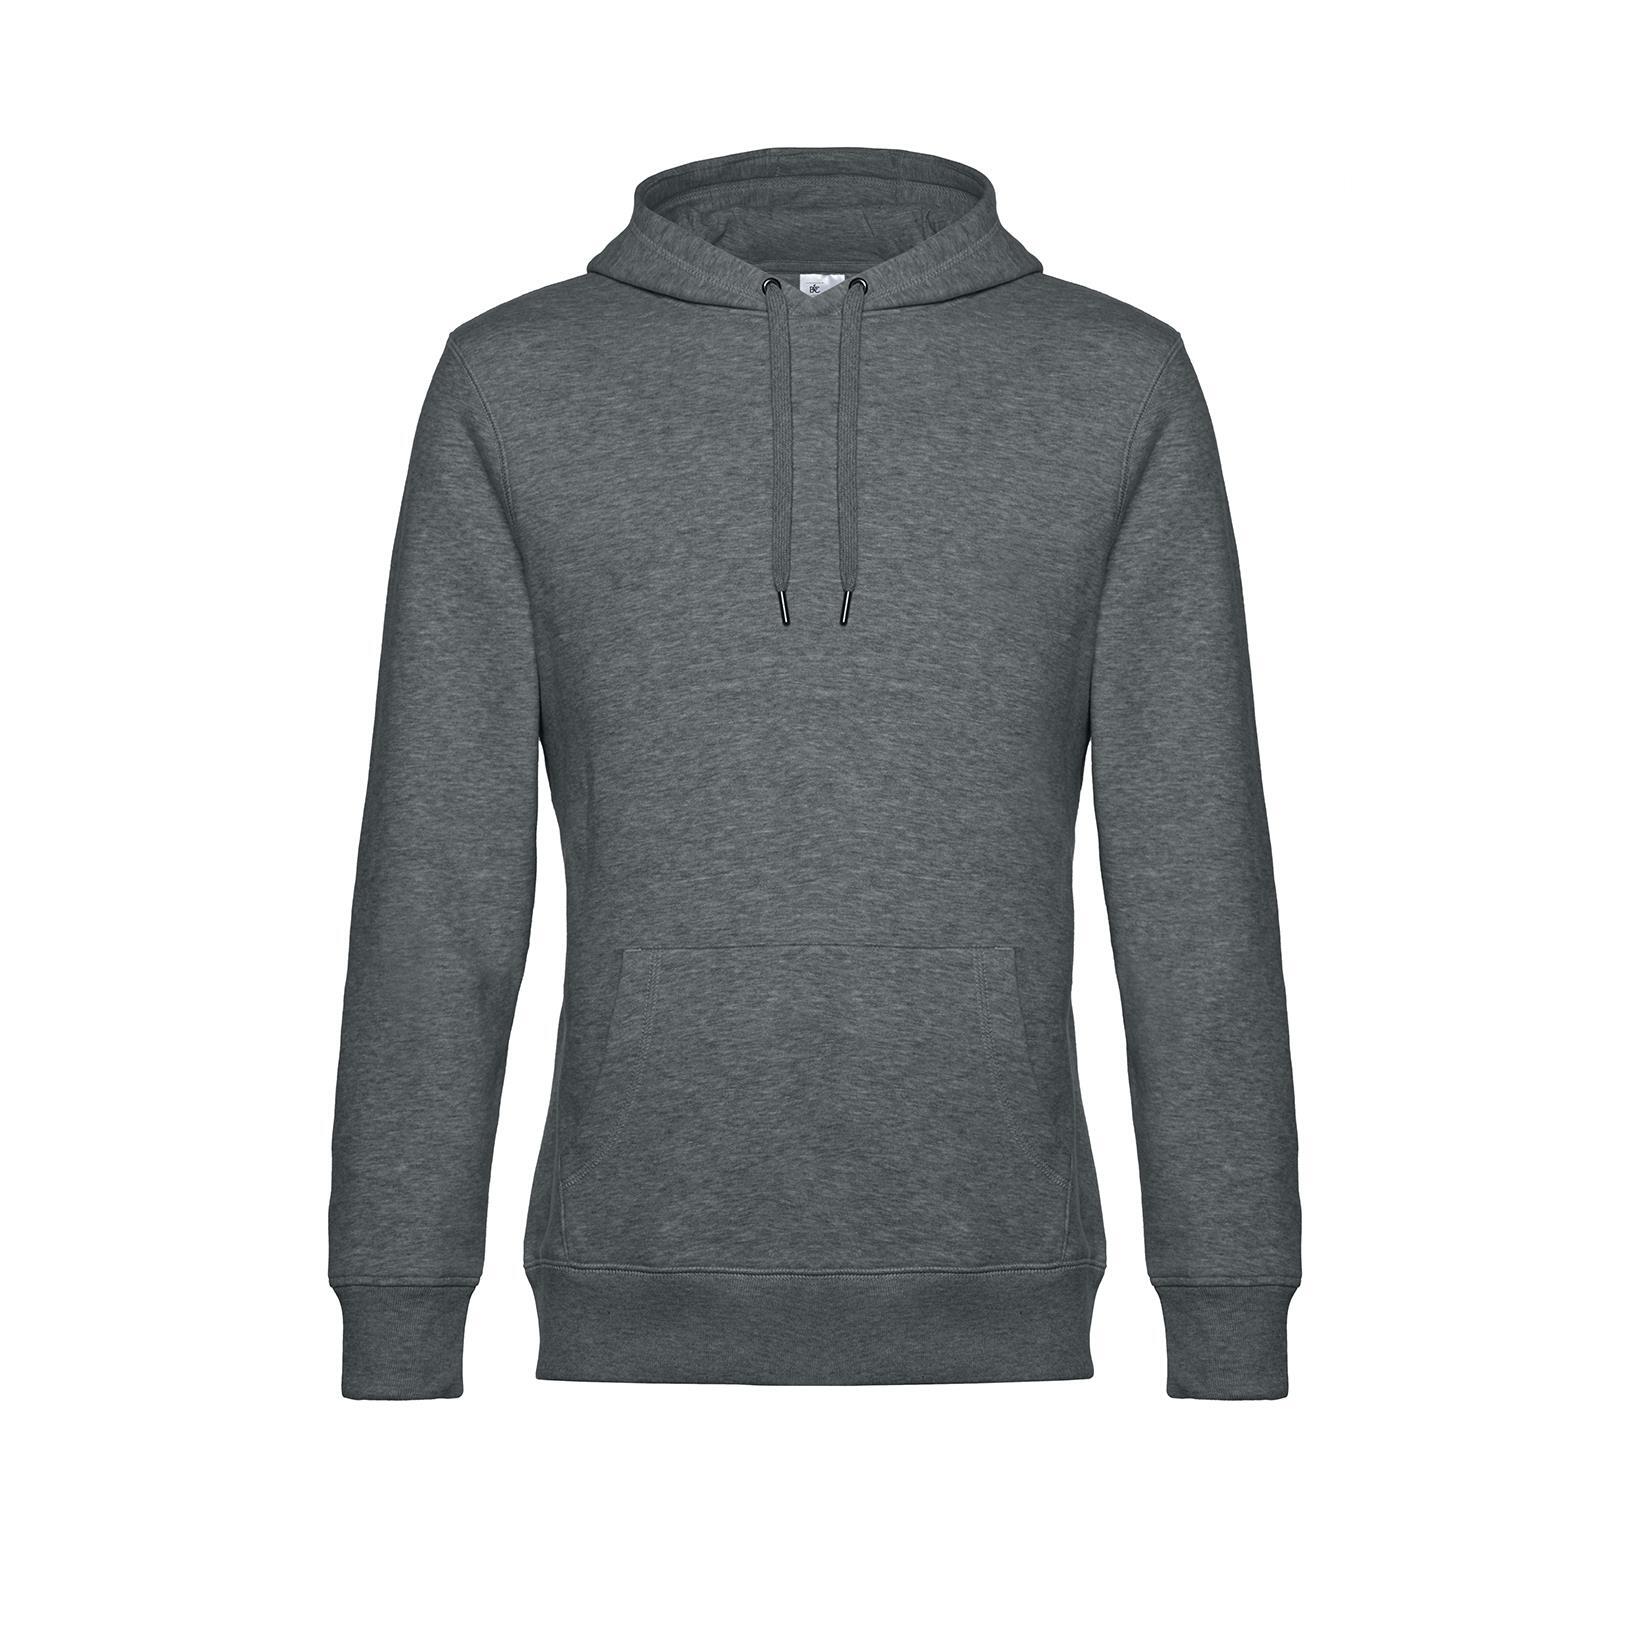 Gemêleerde middel grijze modieuze sweatshirt met hoodie 